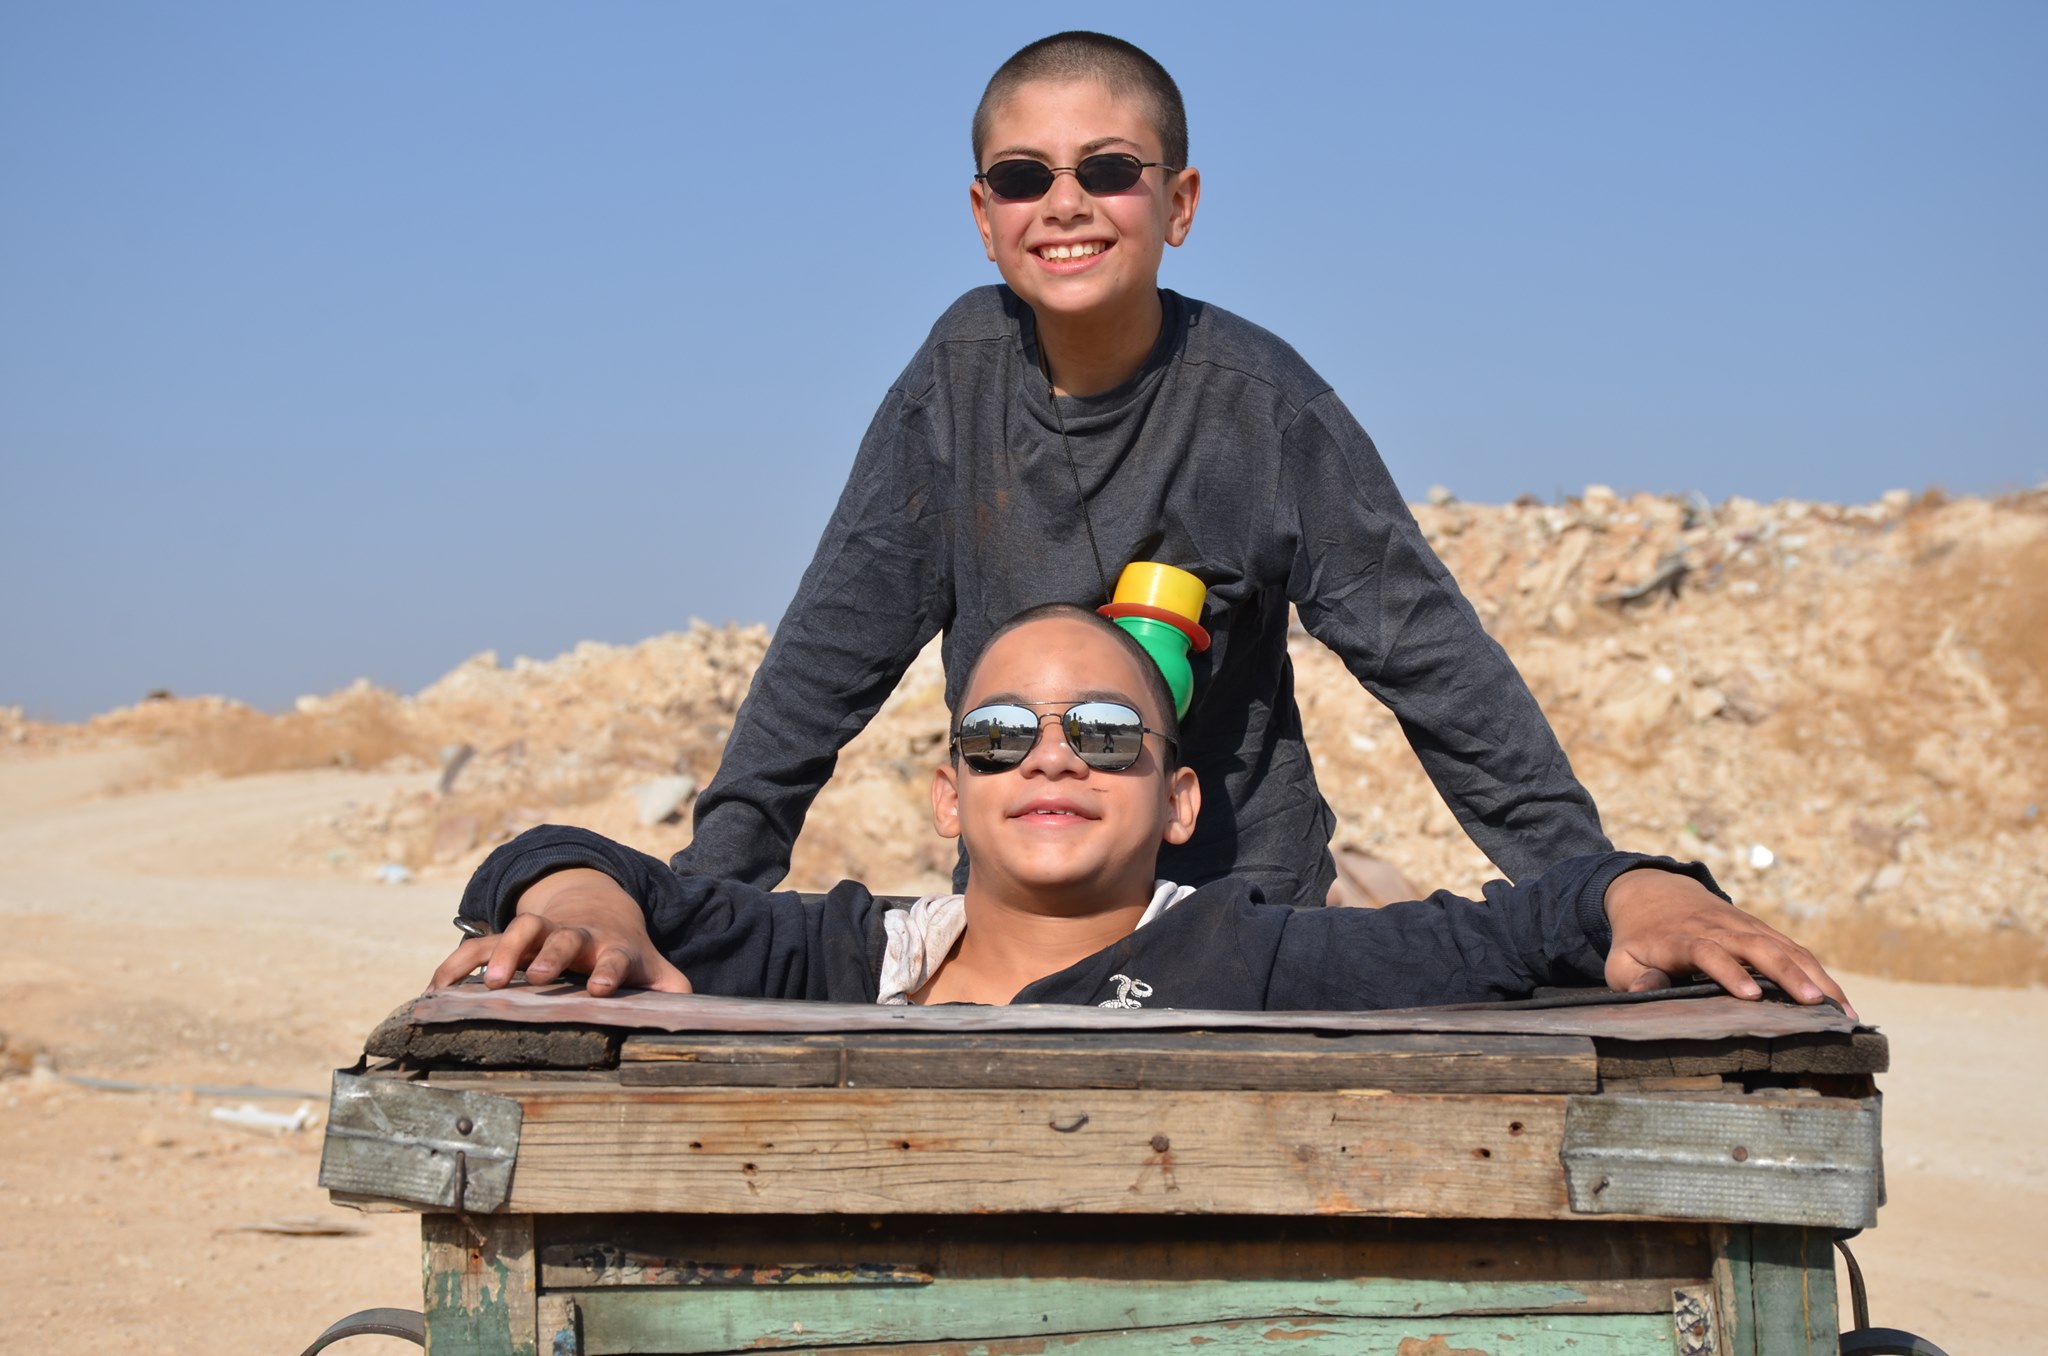 أويما 20 - Uima20 | "فوتوغراف" لمهند كلثوم يحصد الجائزة الكبرى بمهرجان الارز للفيلم القصير بالمغرب